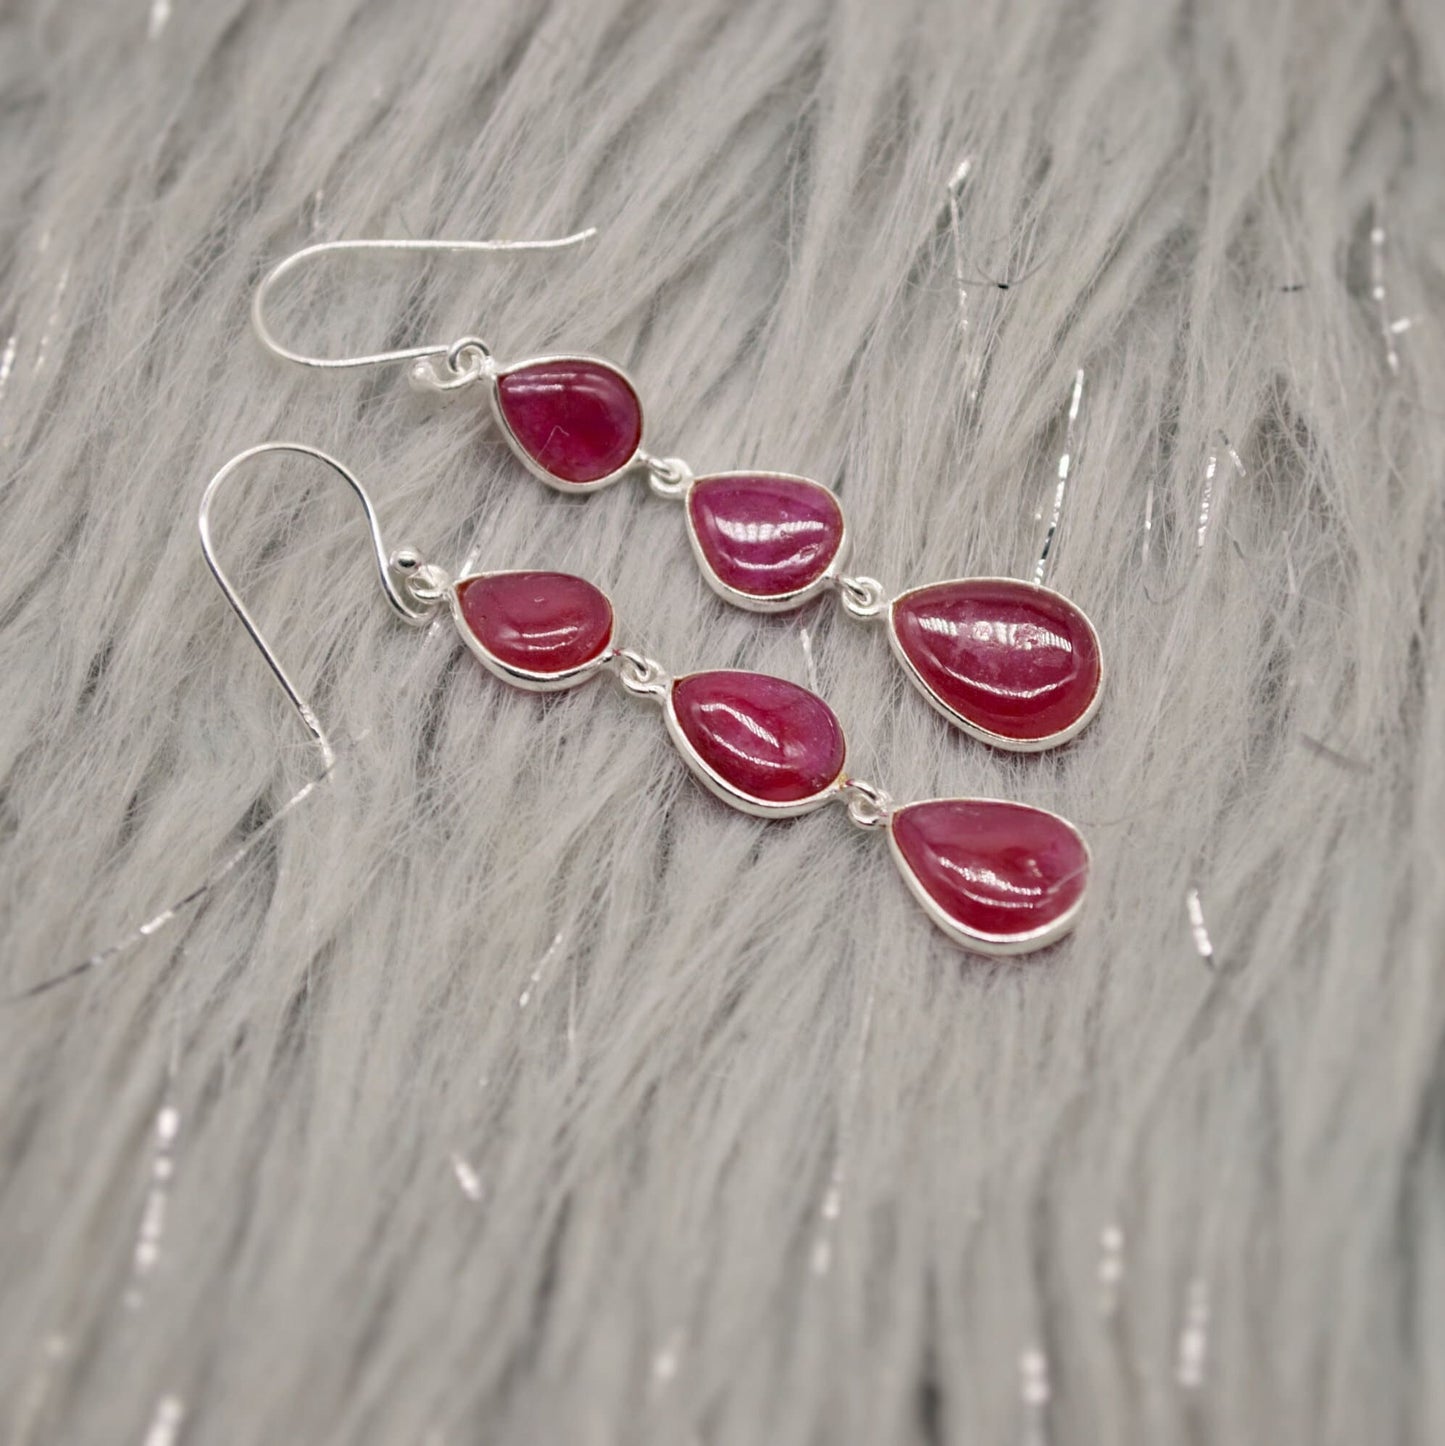 Ruby Earrings, Cute Dainty Drop Silver Earrings, Indian Wedding Jewelry, Minimalist July Birthstone Earrings